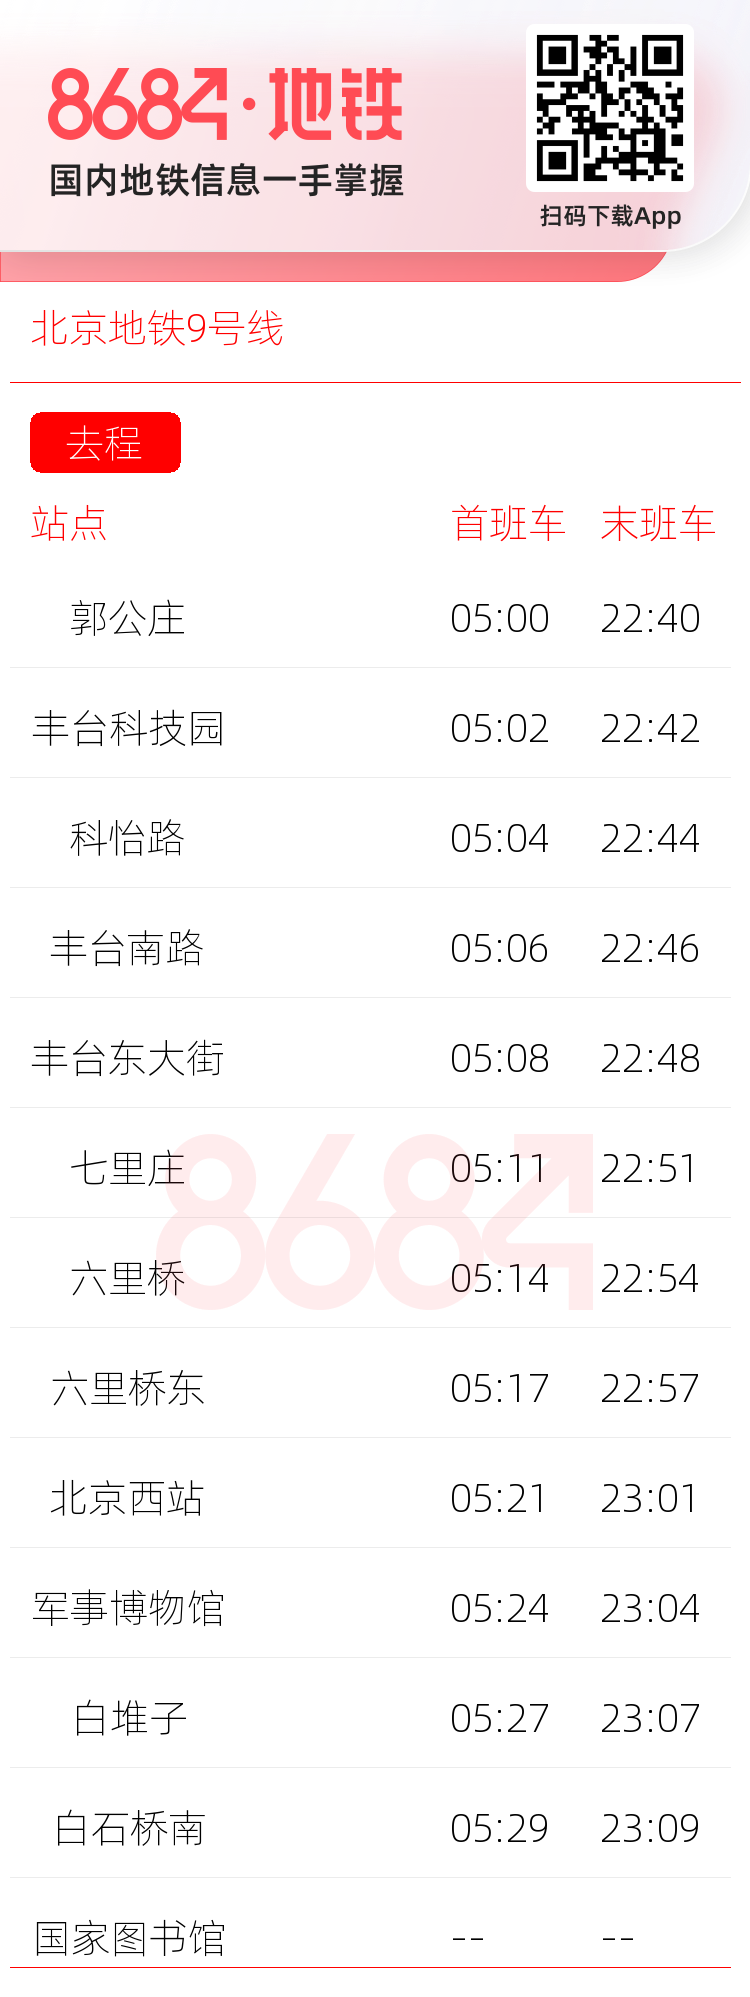 北京地铁9号线运营时间表